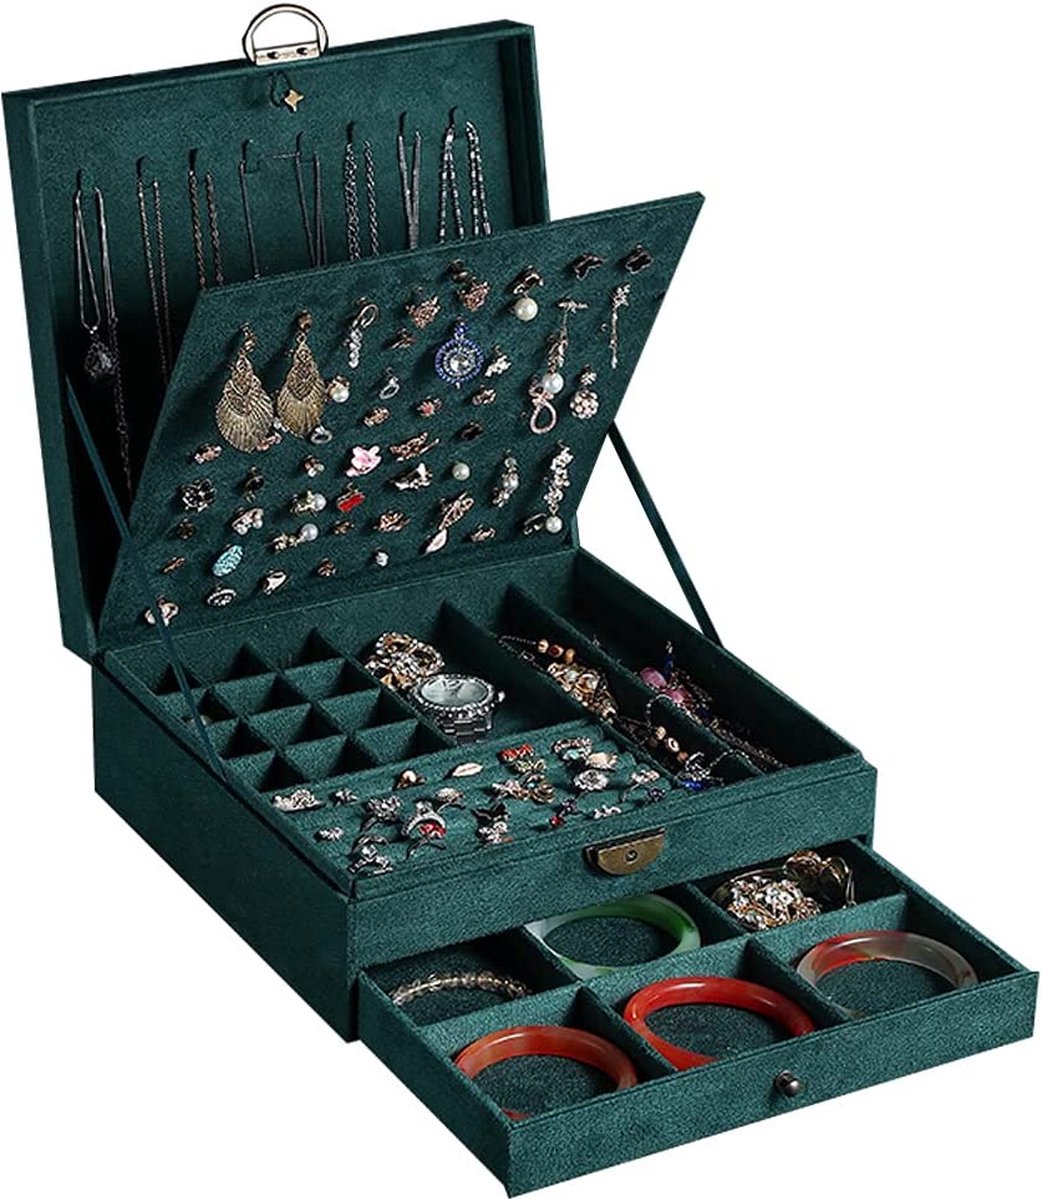 Sieradenkistje voor dames, 3 lagen, grote sieraden-organizer, opbergdoos voor oorbellen, halskettingen, ringen, armbanden, sieradenhouder, afsluitbaar sieradendoosje (marineblauw)